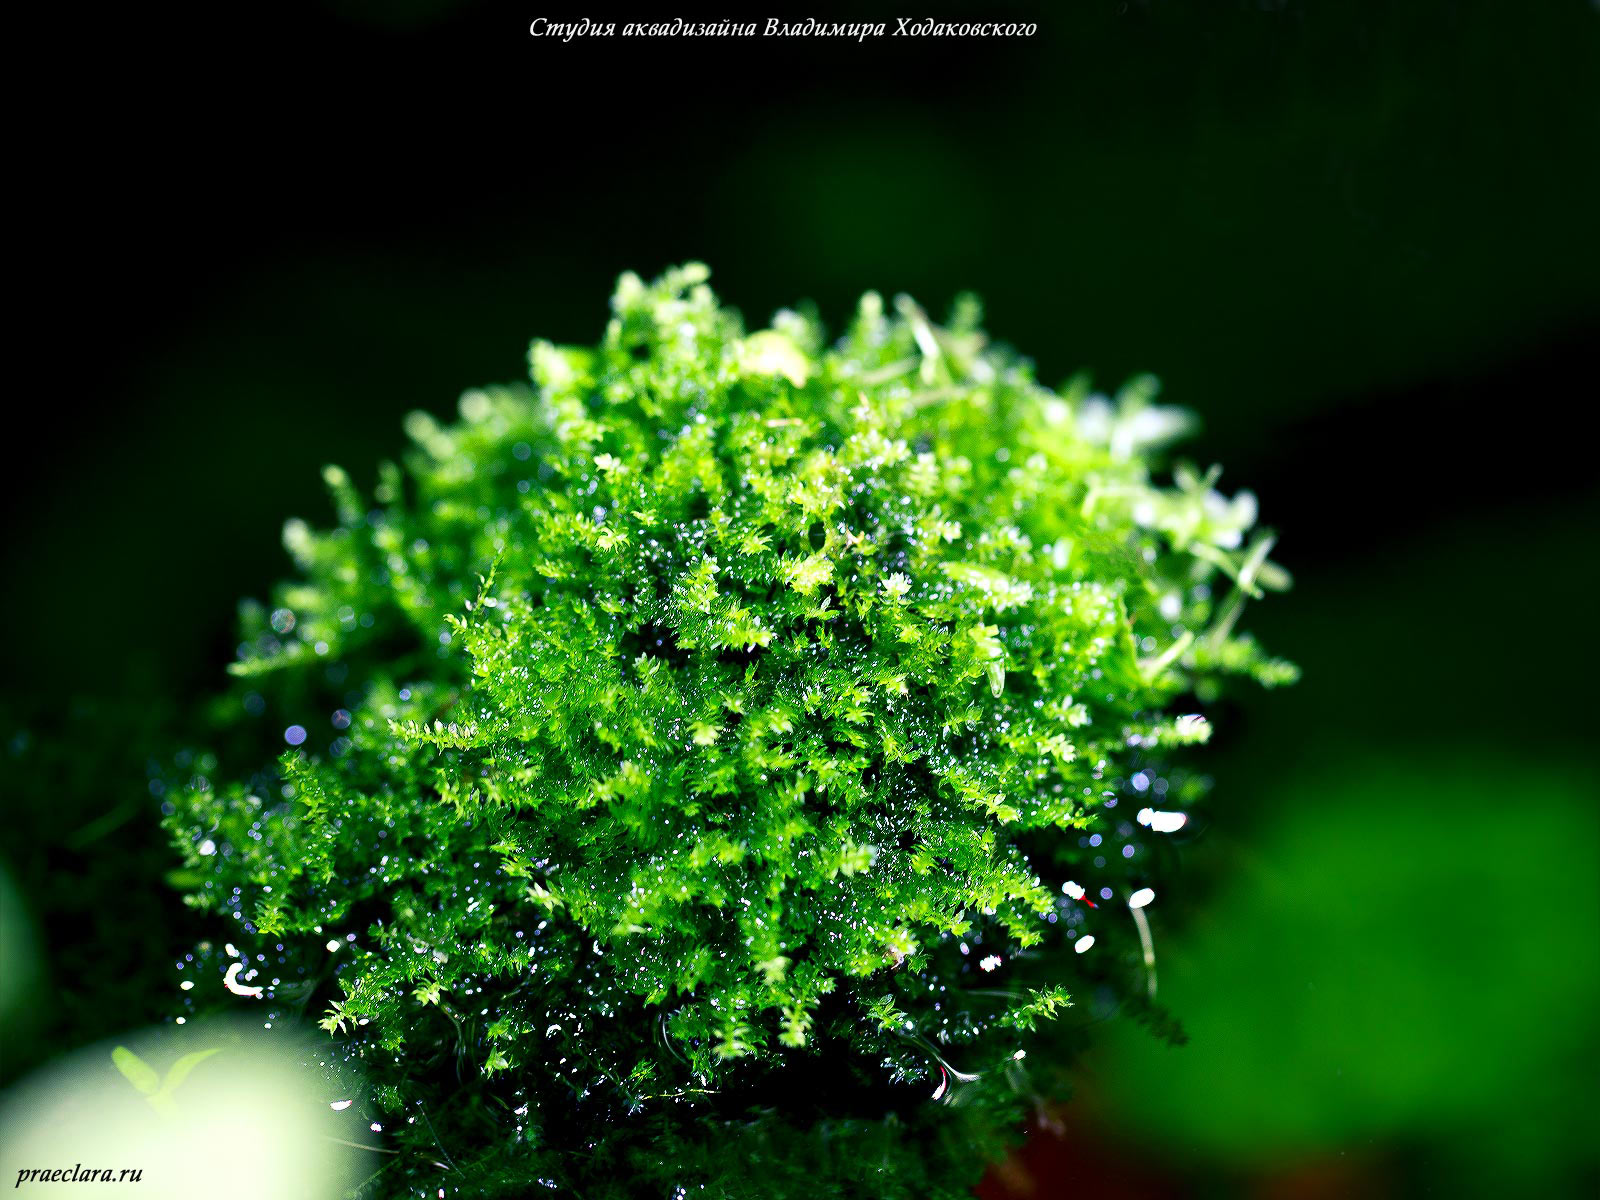 Vesicularia montagnei (Christmas moss)